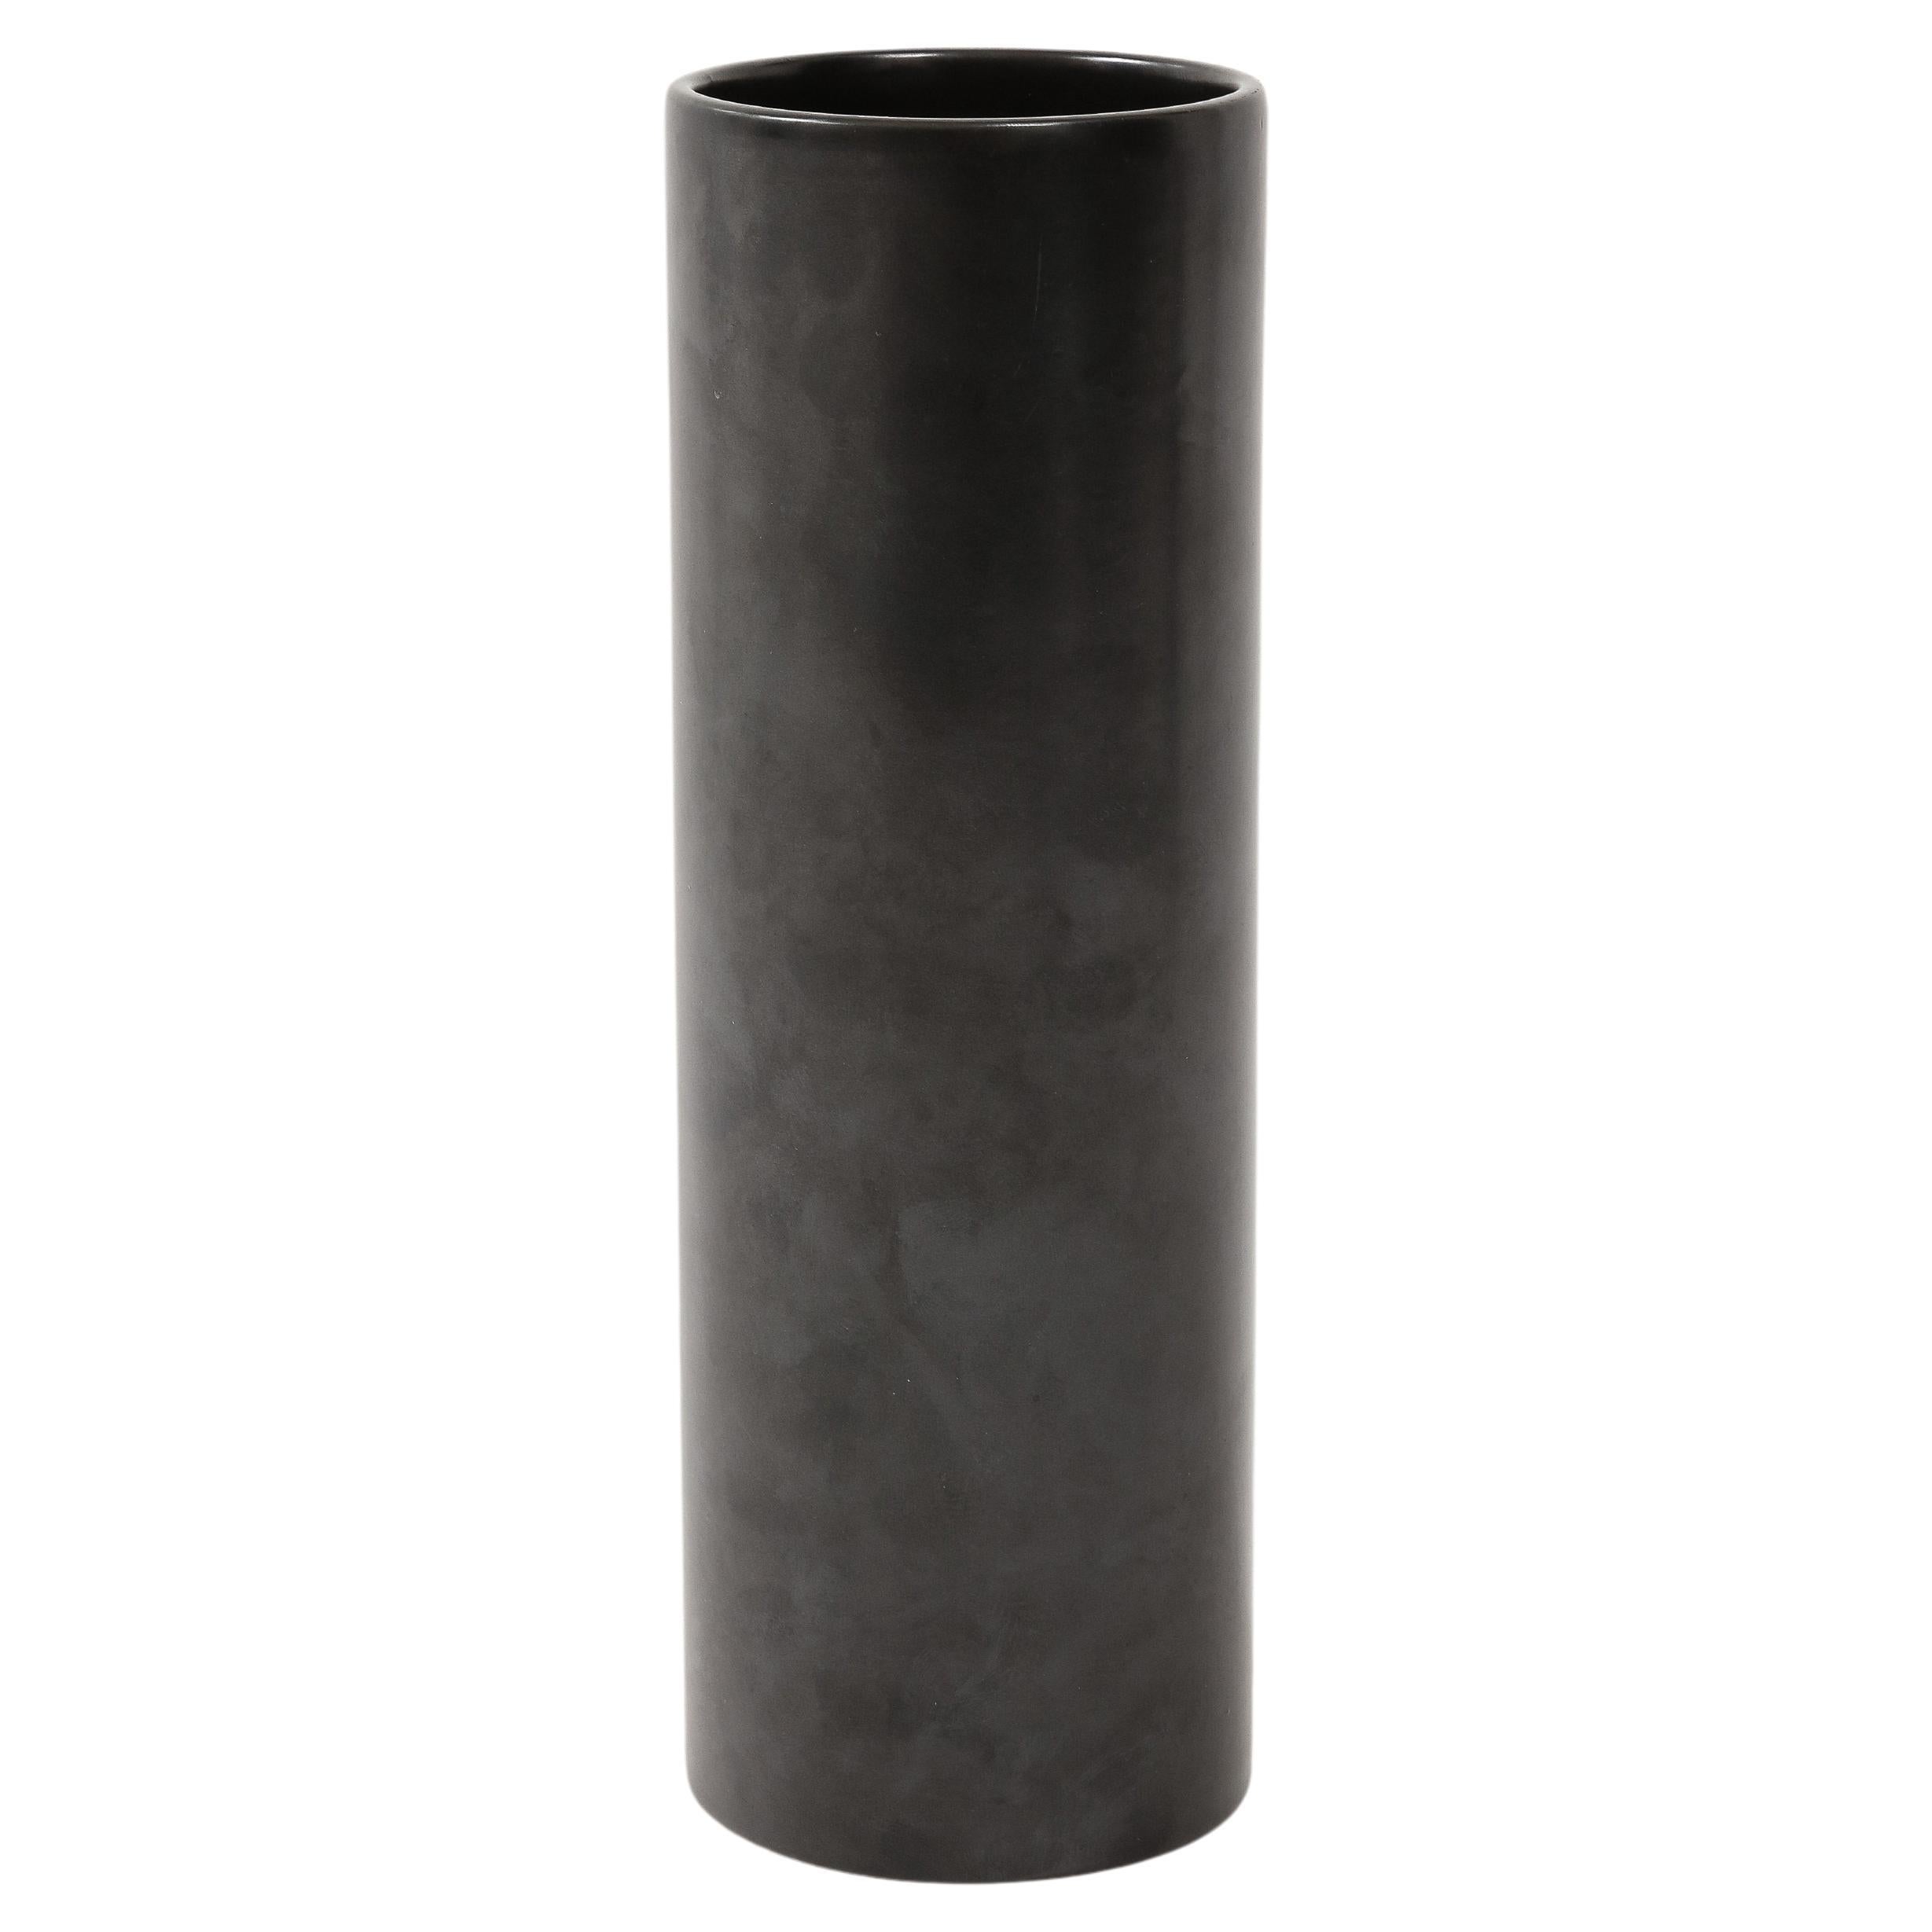 Large Georges Jouve Style Black Matte Cylinder Vase, France, c. 1950's